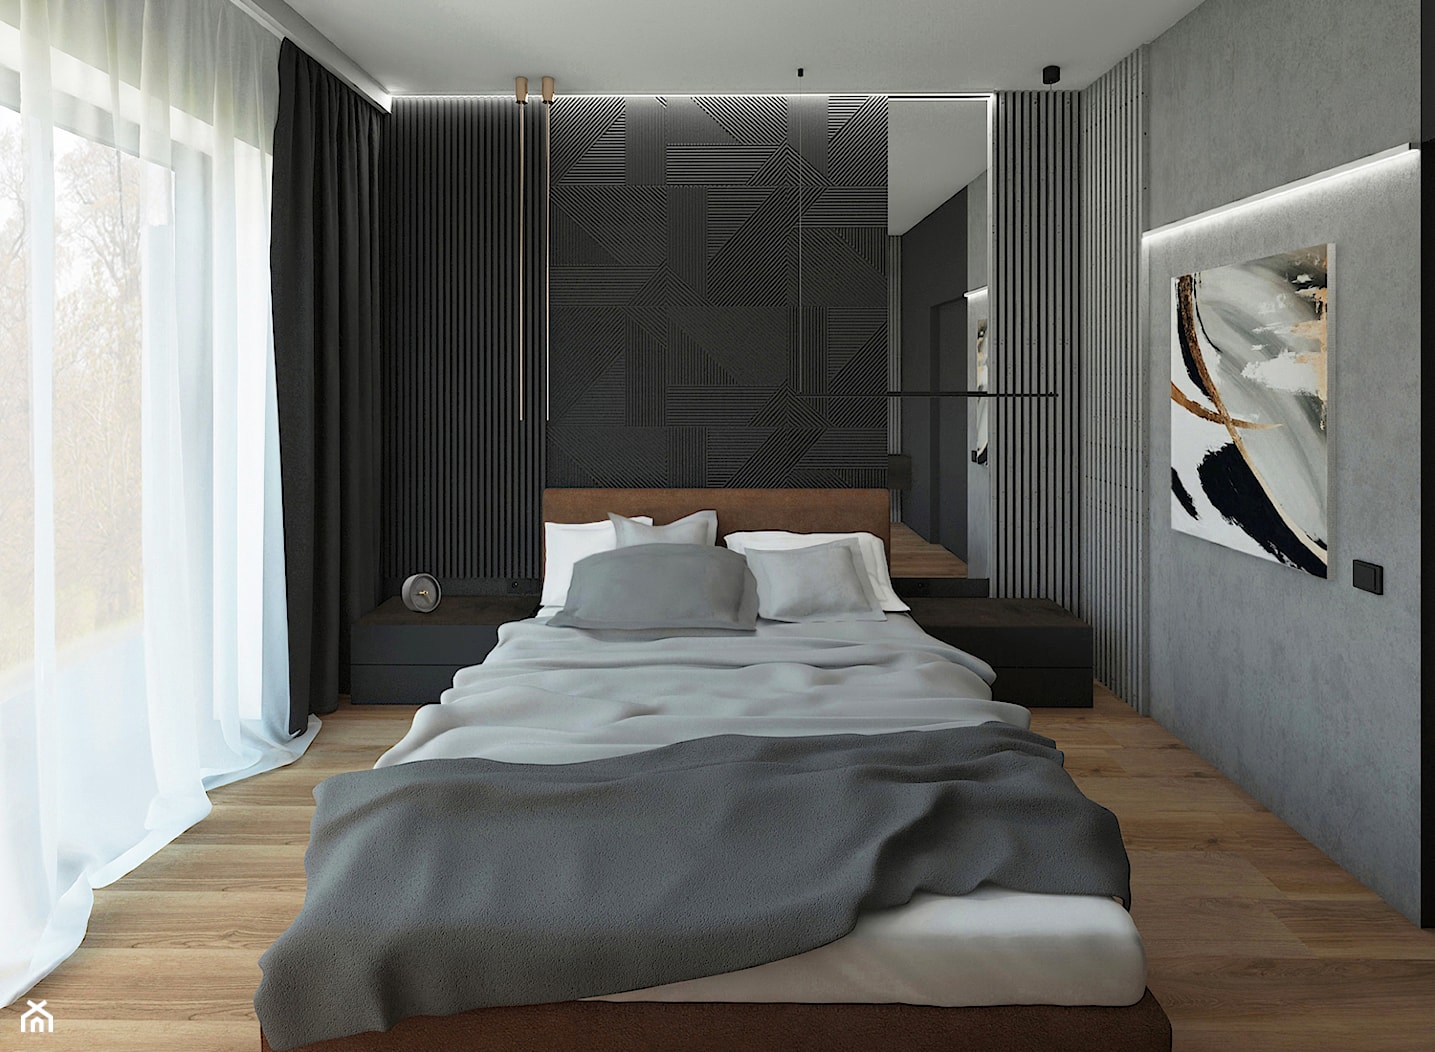 Minimalistyczna sypialnia - Sypialnia, styl minimalistyczny - zdjęcie od meinDESIGN - Homebook